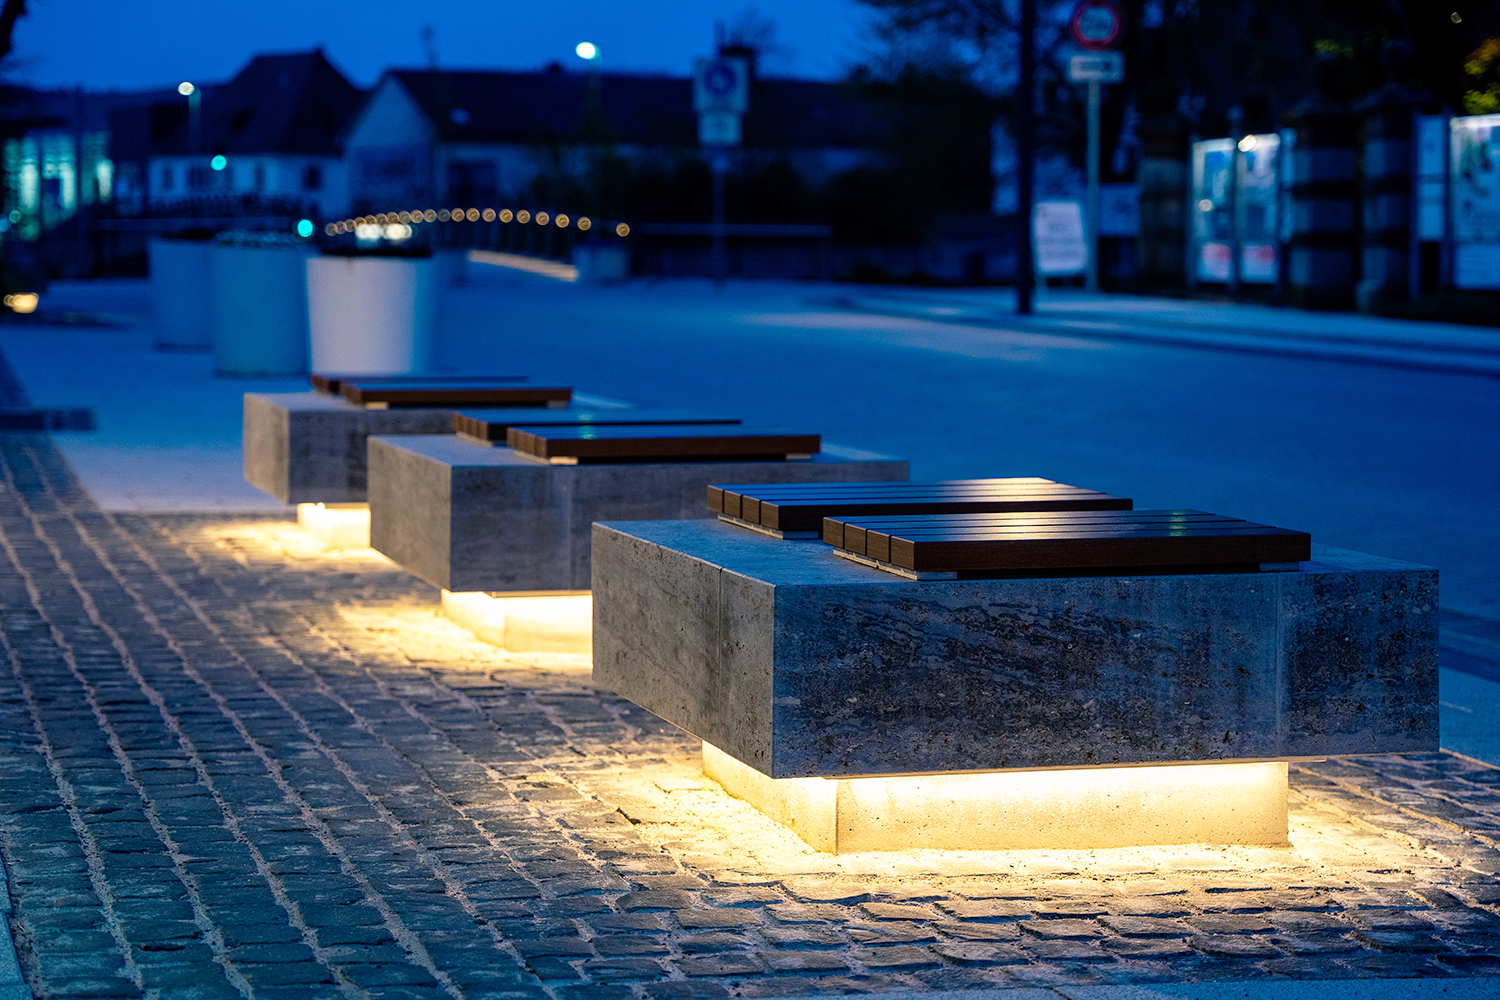 Illuminated benches in Bad Neustadt an der Saale